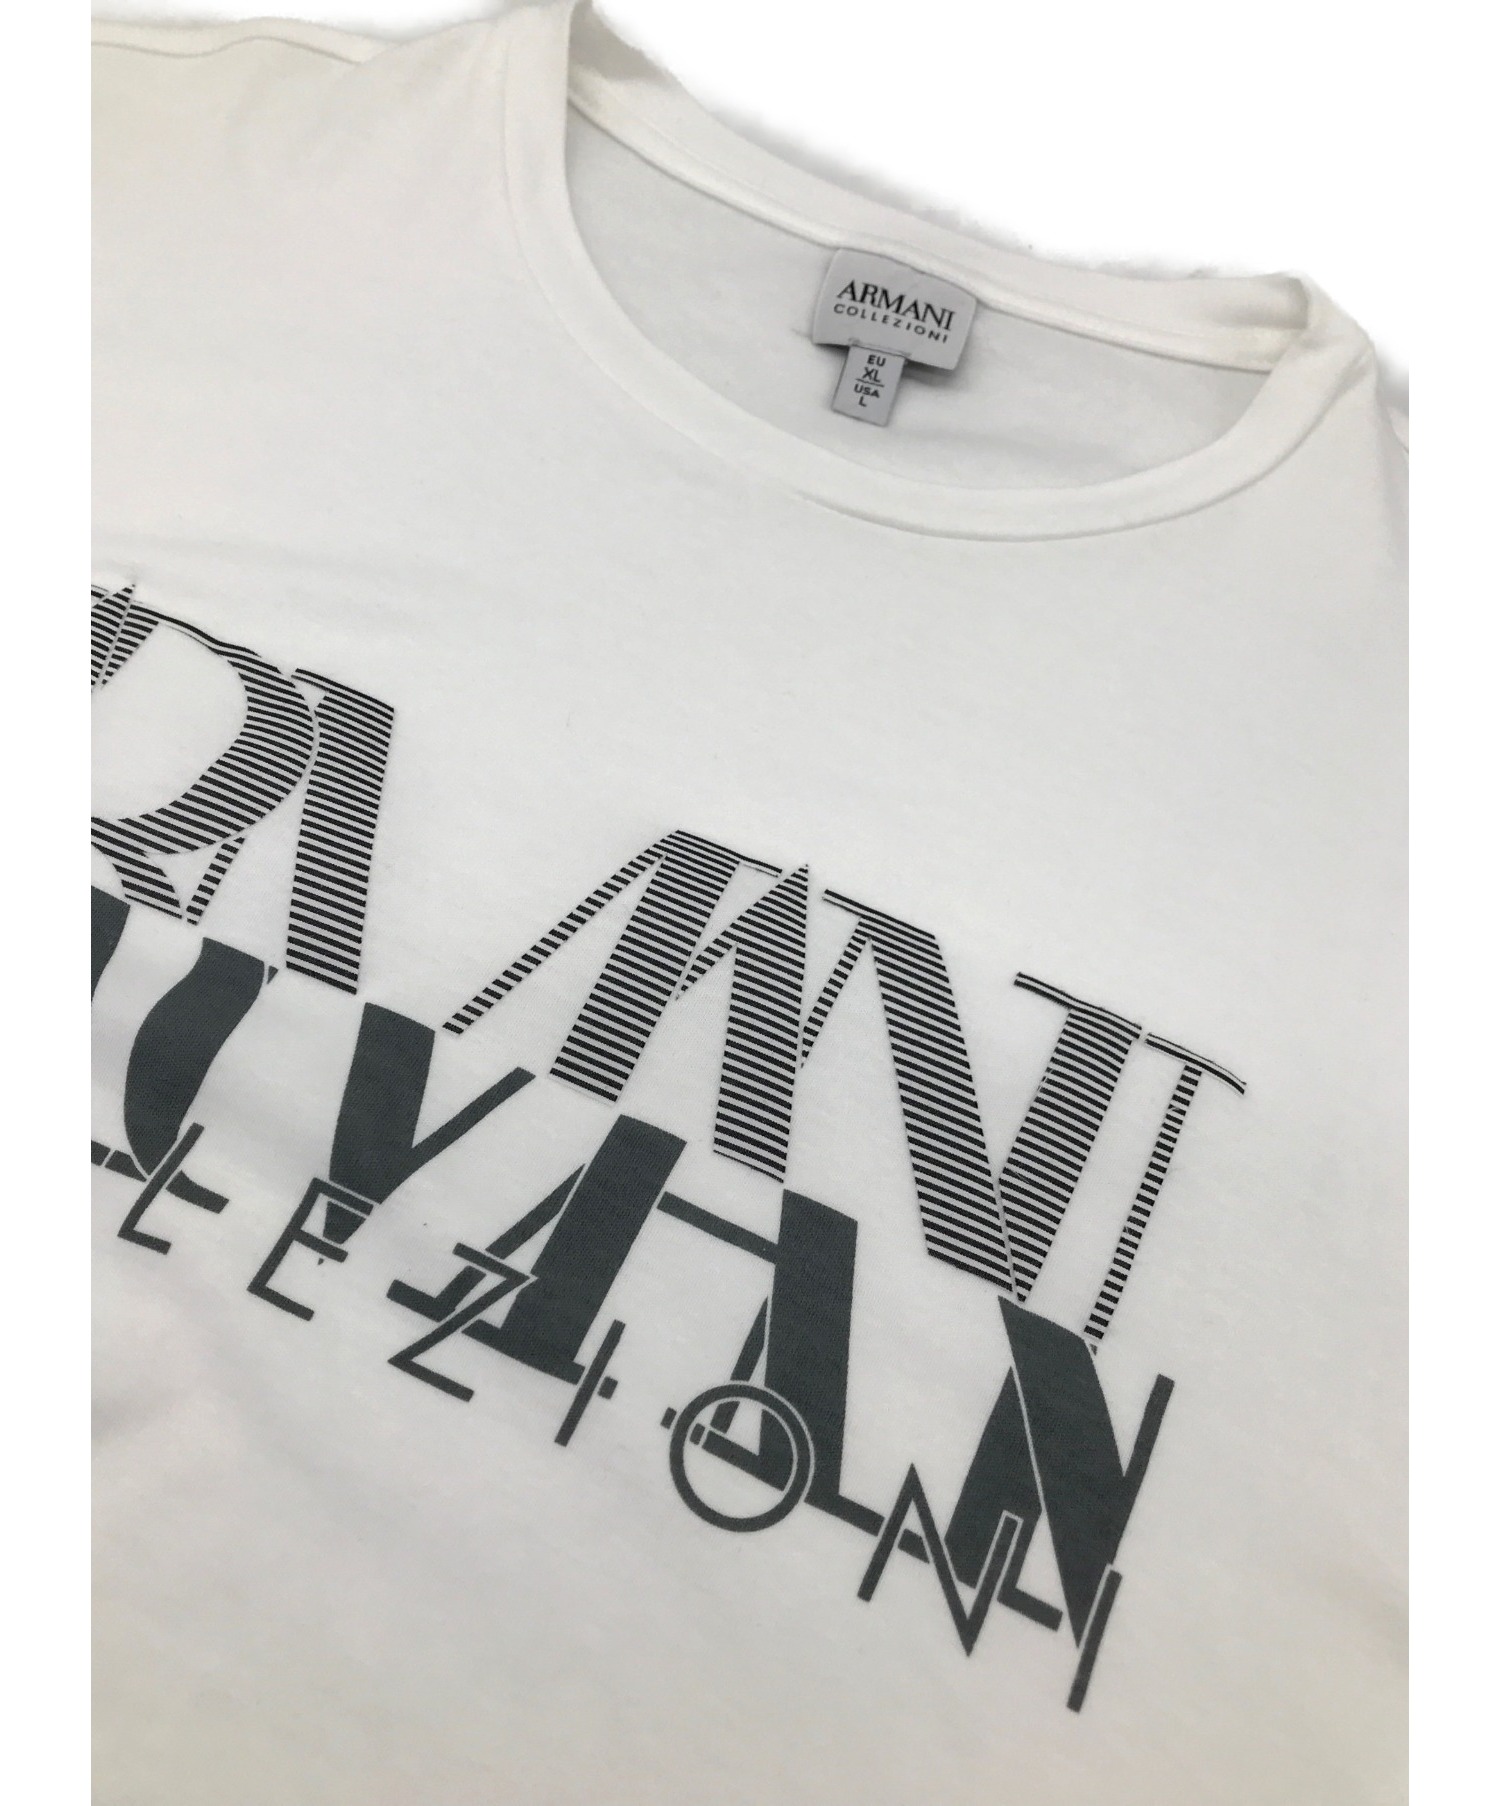 ARMANI COLLEZIONI (アルマーニ コレツィオーニ) ロゴTシャツ ホワイト サイズ:XL